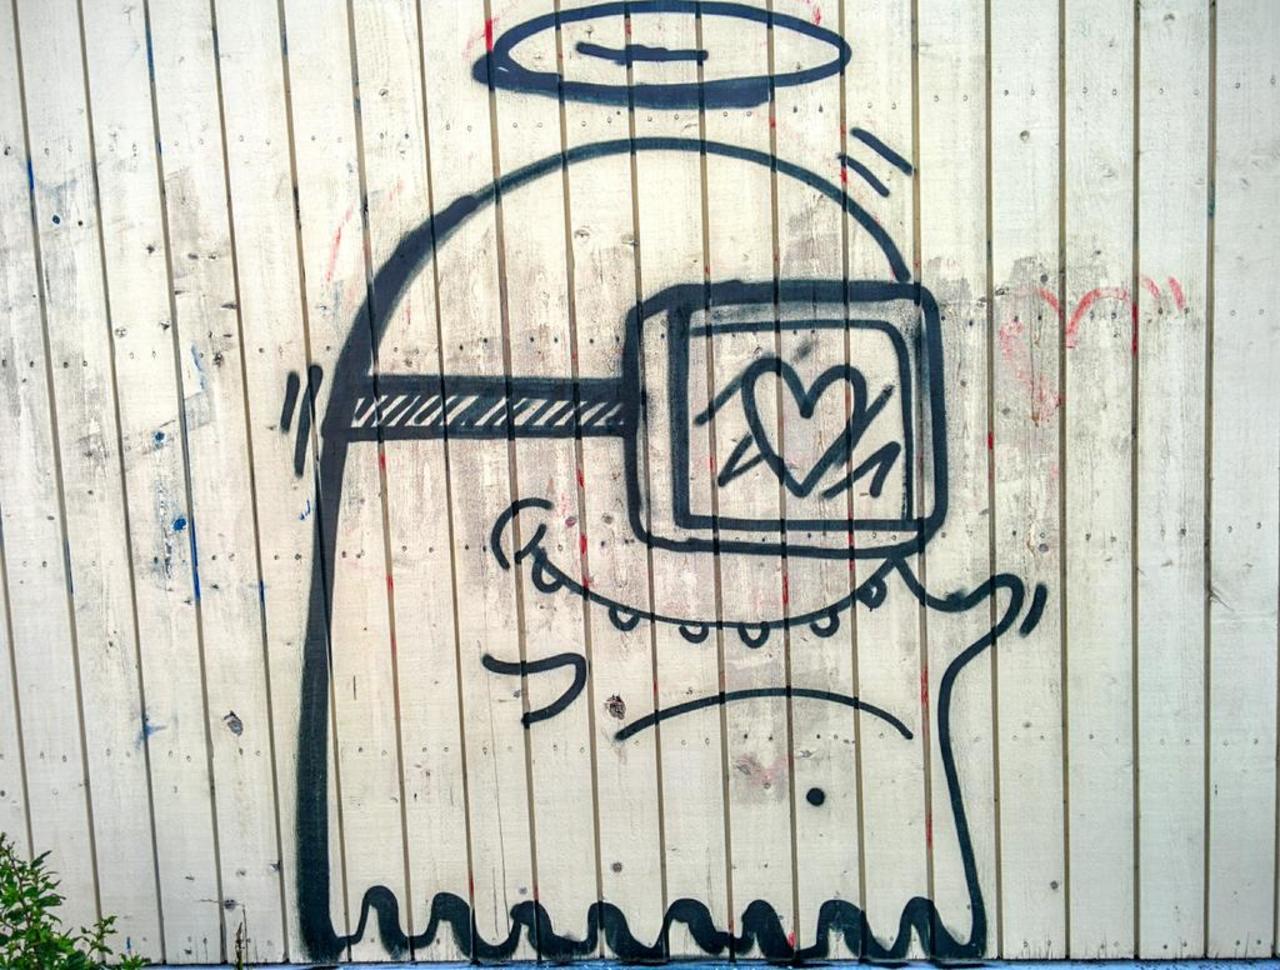 Happy alien in love?  #Turku #Portsa #Suomi #Finland #Streetart #Graffiti #Urban #Alien http://t.co/toiUKwxqWf